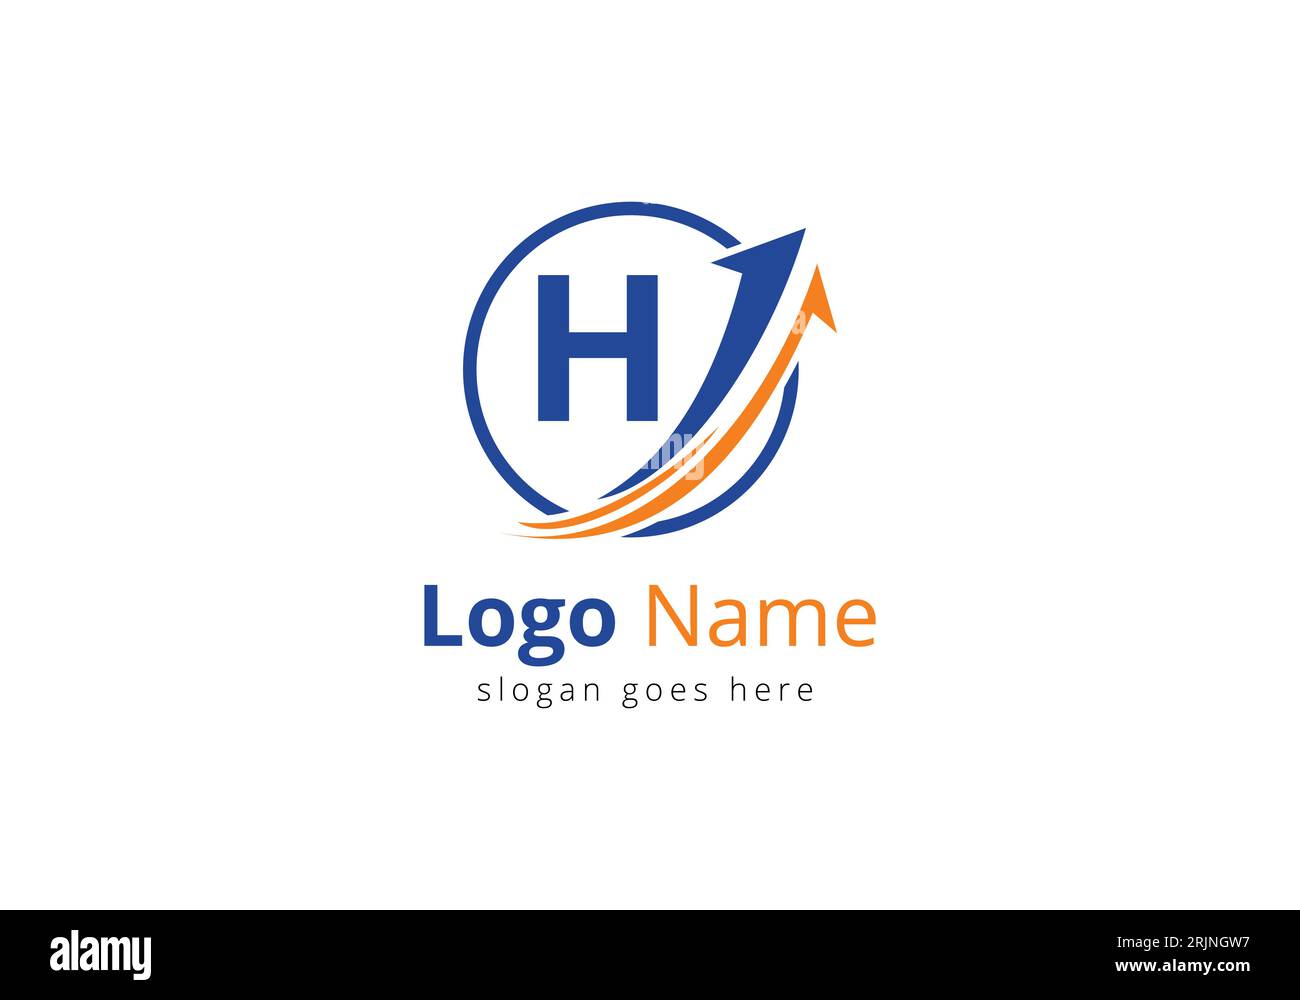 Logo de financement avec lettre H. Concept de logo financier ou de réussite. Logo pour l'entreprise comptable et l'identité de l'entreprise Illustration de Vecteur